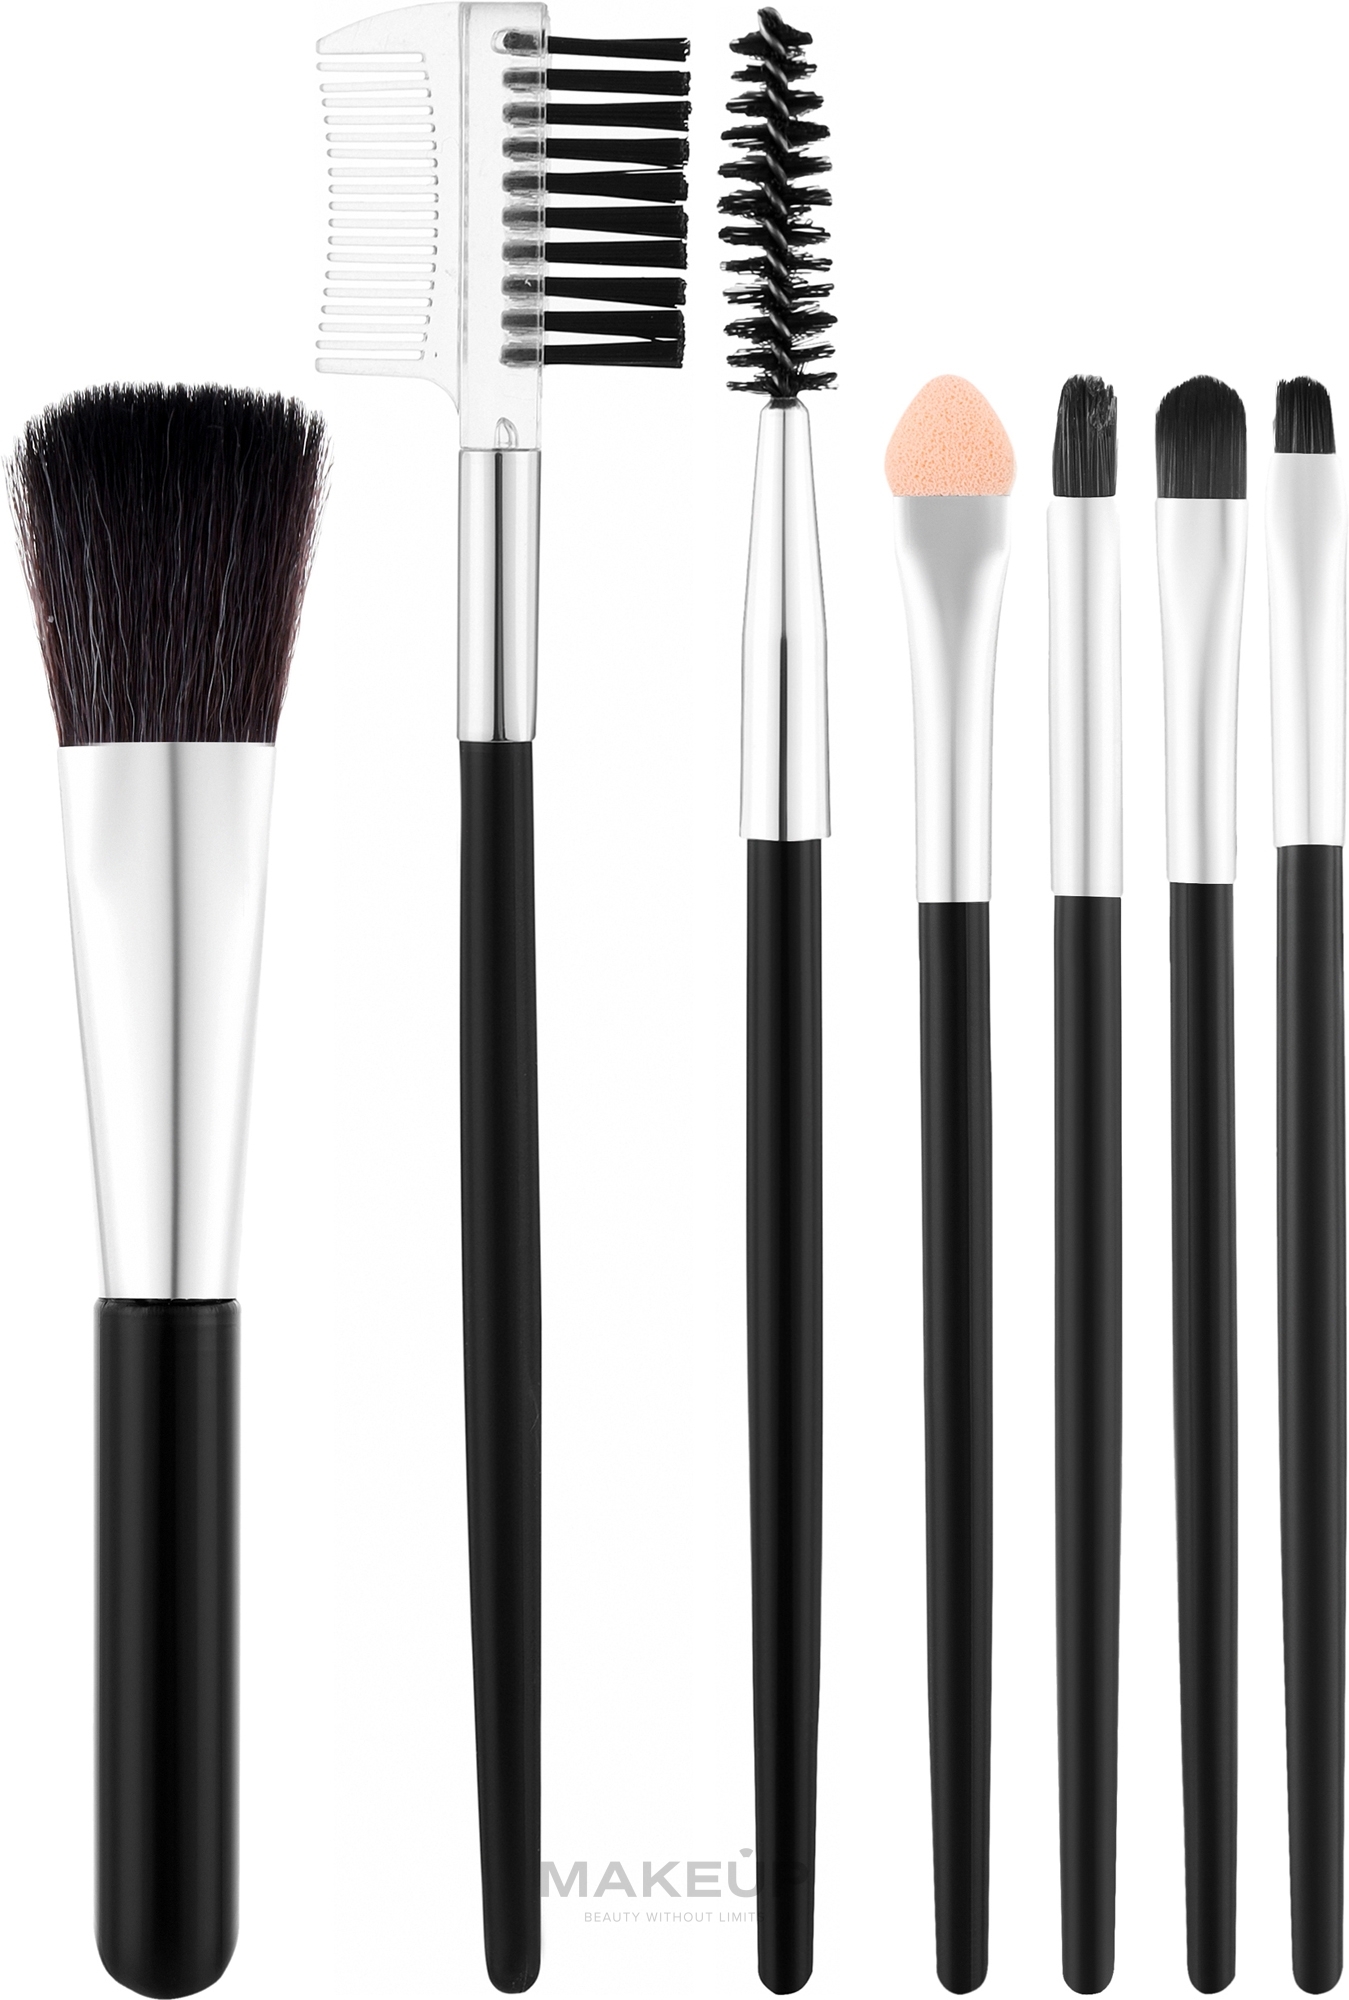 Набор кистей для макияжа CS-007S, в прозрачном футляре, серебряный + черный, 7 шт. - Cosmo Shop — фото 7шт